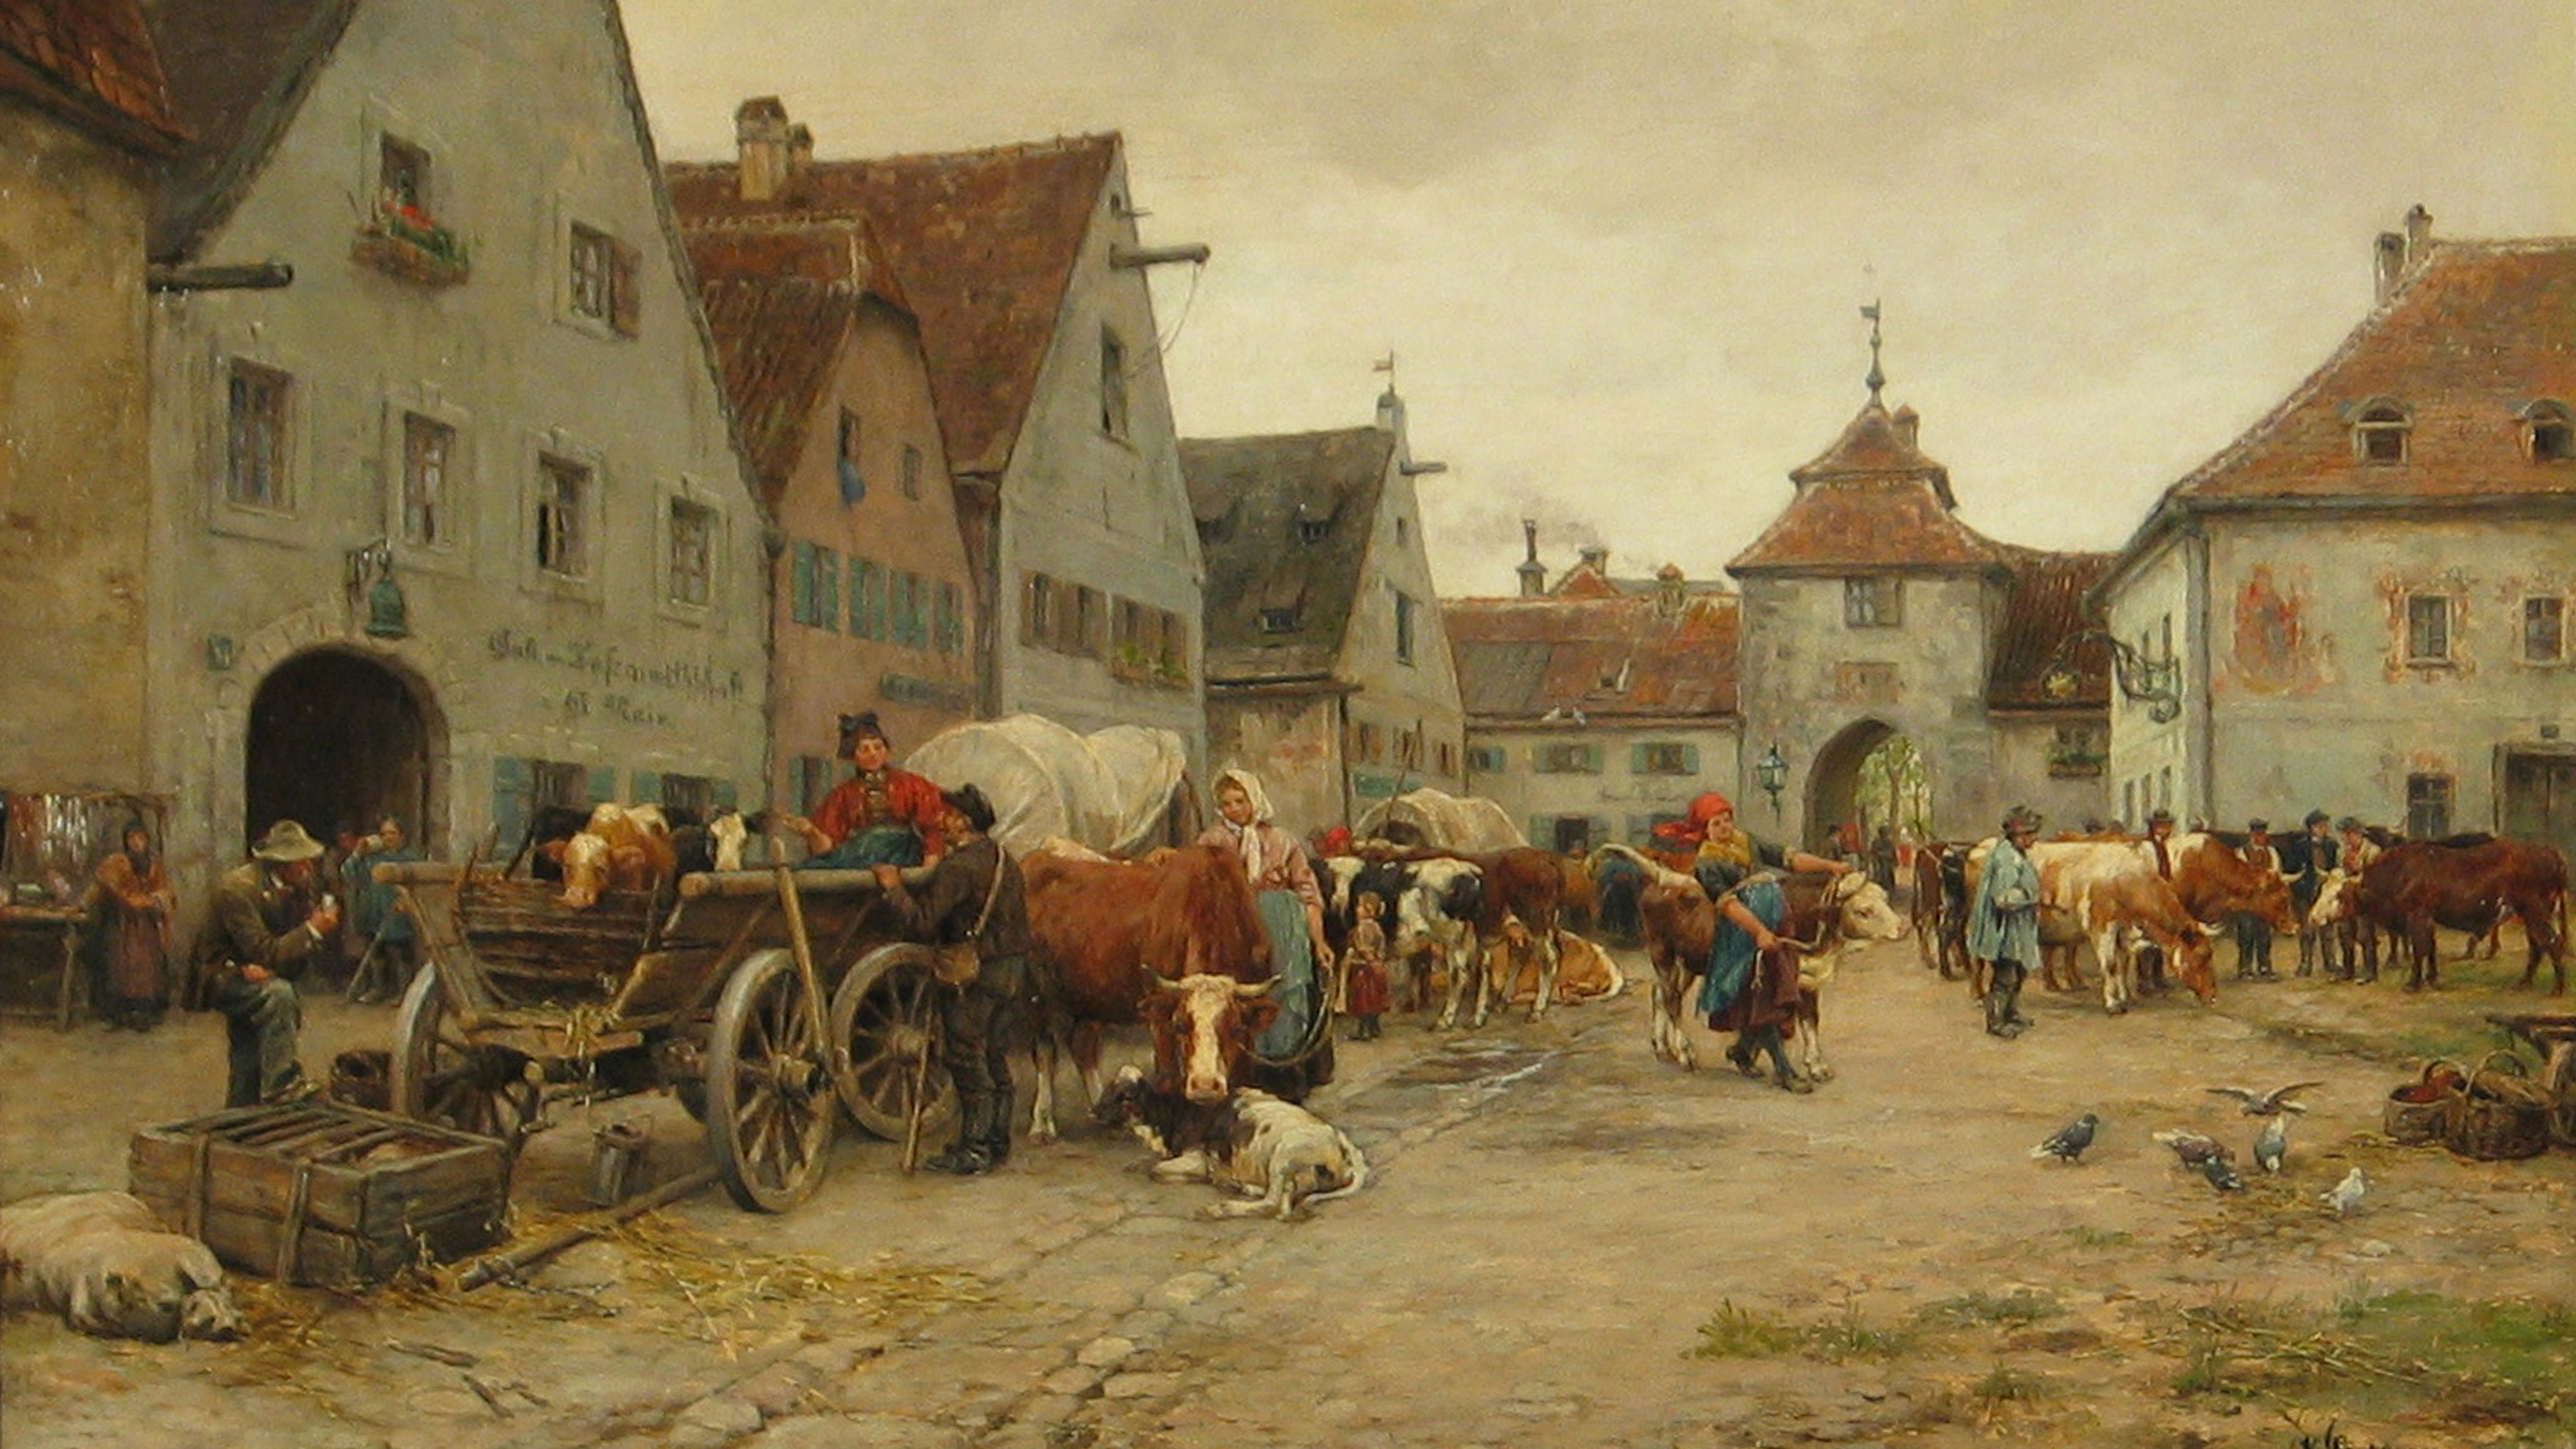 Ölgemälde von Karl Stuhlmüller "Unterbräu mit Augsburger Tor" zeigt eine Straße mit Fuhrwerken und Rindern